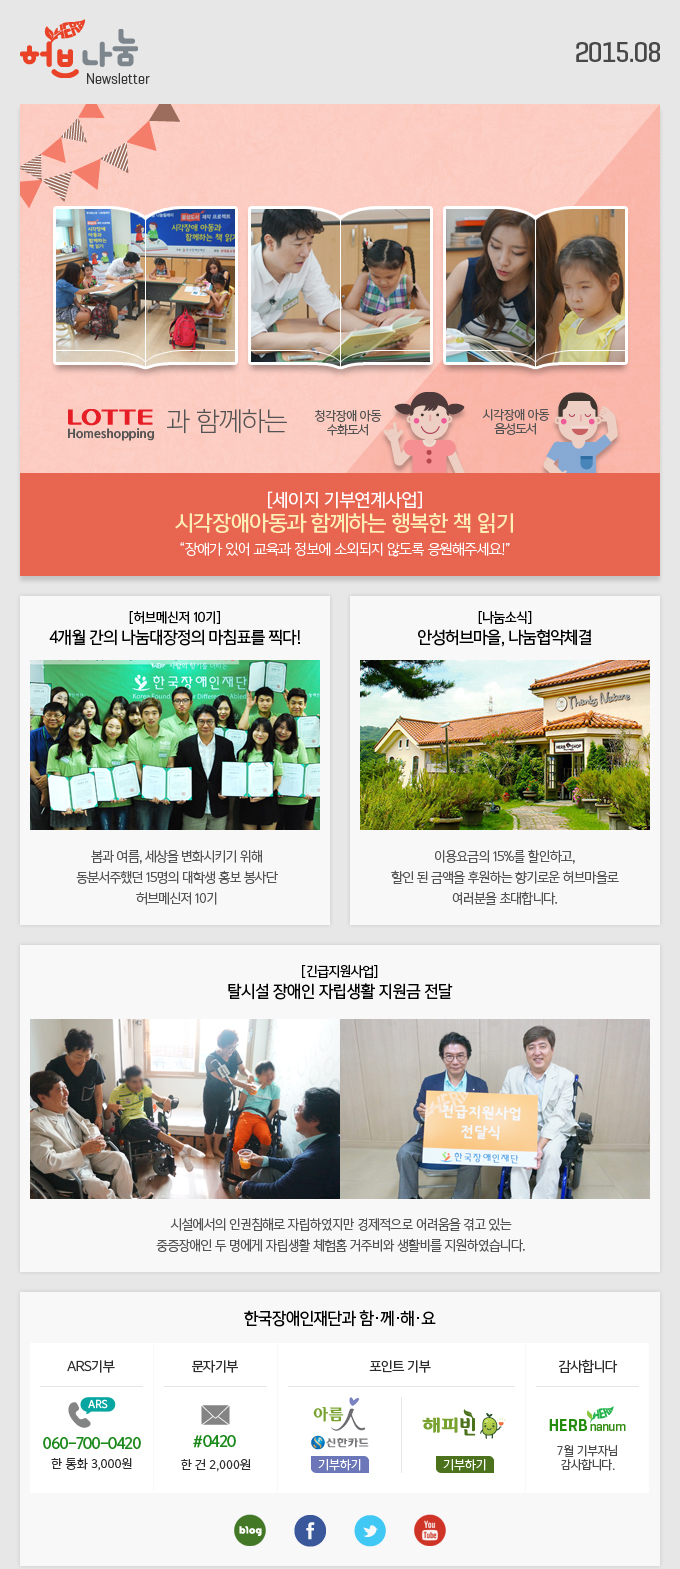 허브나눔 Newsletter 2015.08 한국장애인재단과 함·께·해·요 ARS기부 ARS 060-700-0420 한 통화 3,000원